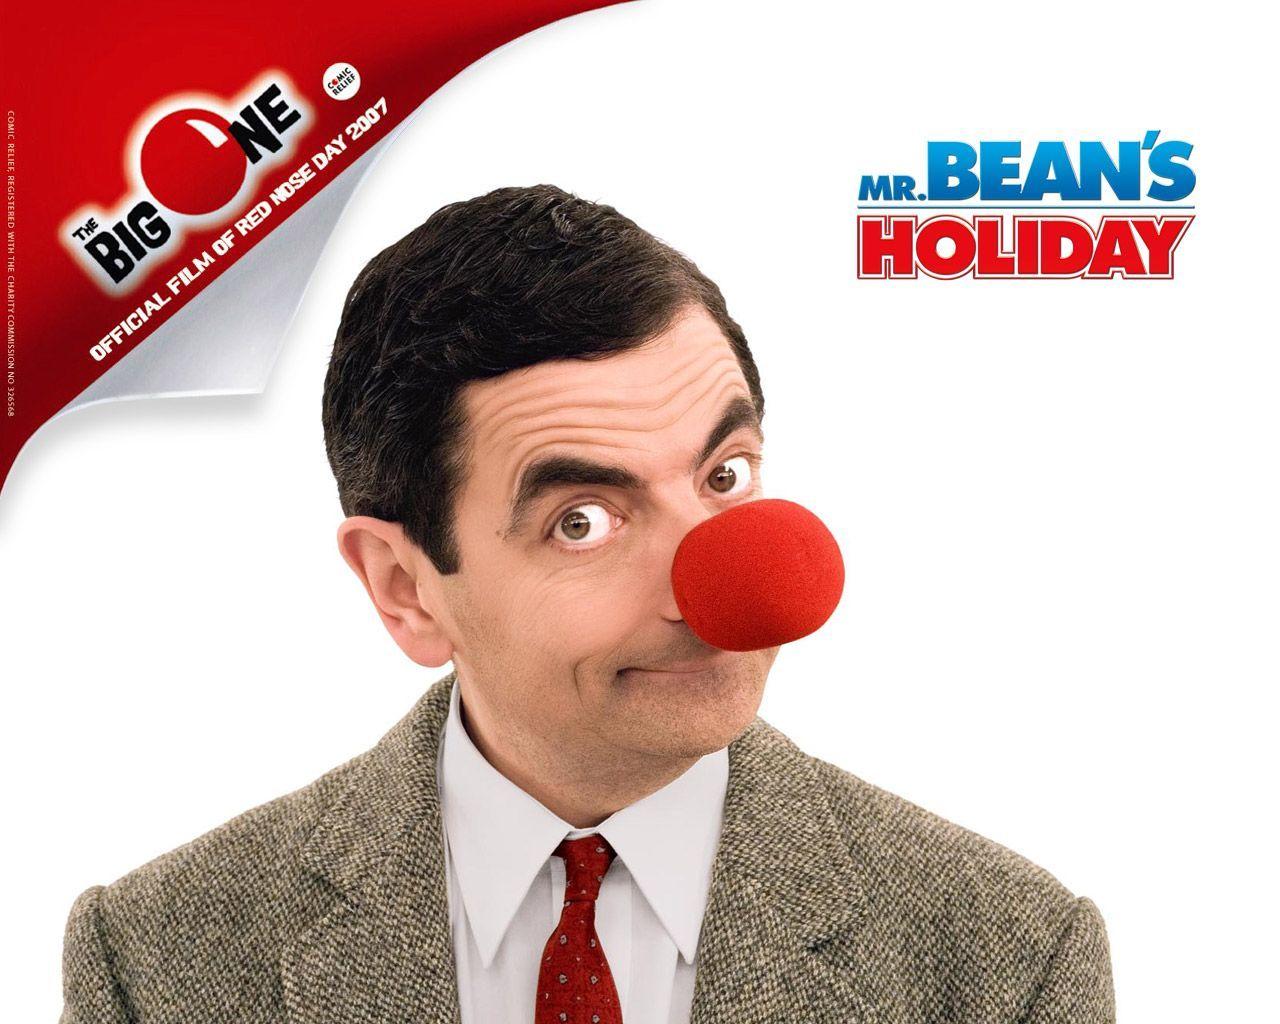 Mr Bean red nose. Mr. Bean. Mr bean and Red nose